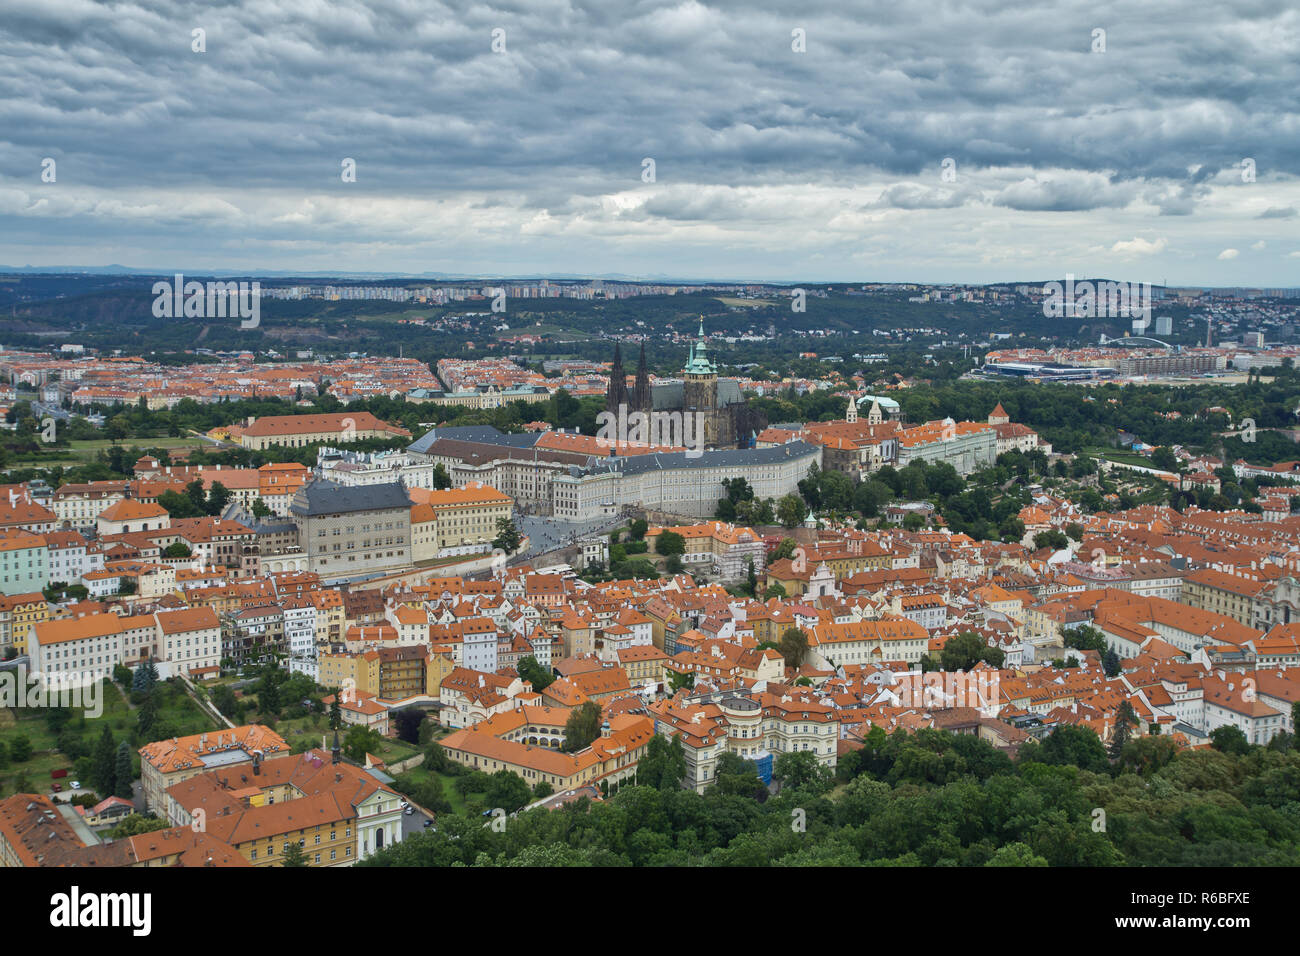 Praga es la capital y ciudad más grande de la República Checa, la 14ª ciudad más grande de la Unión Europea y la capital histórica de Bohemia. Foto de stock